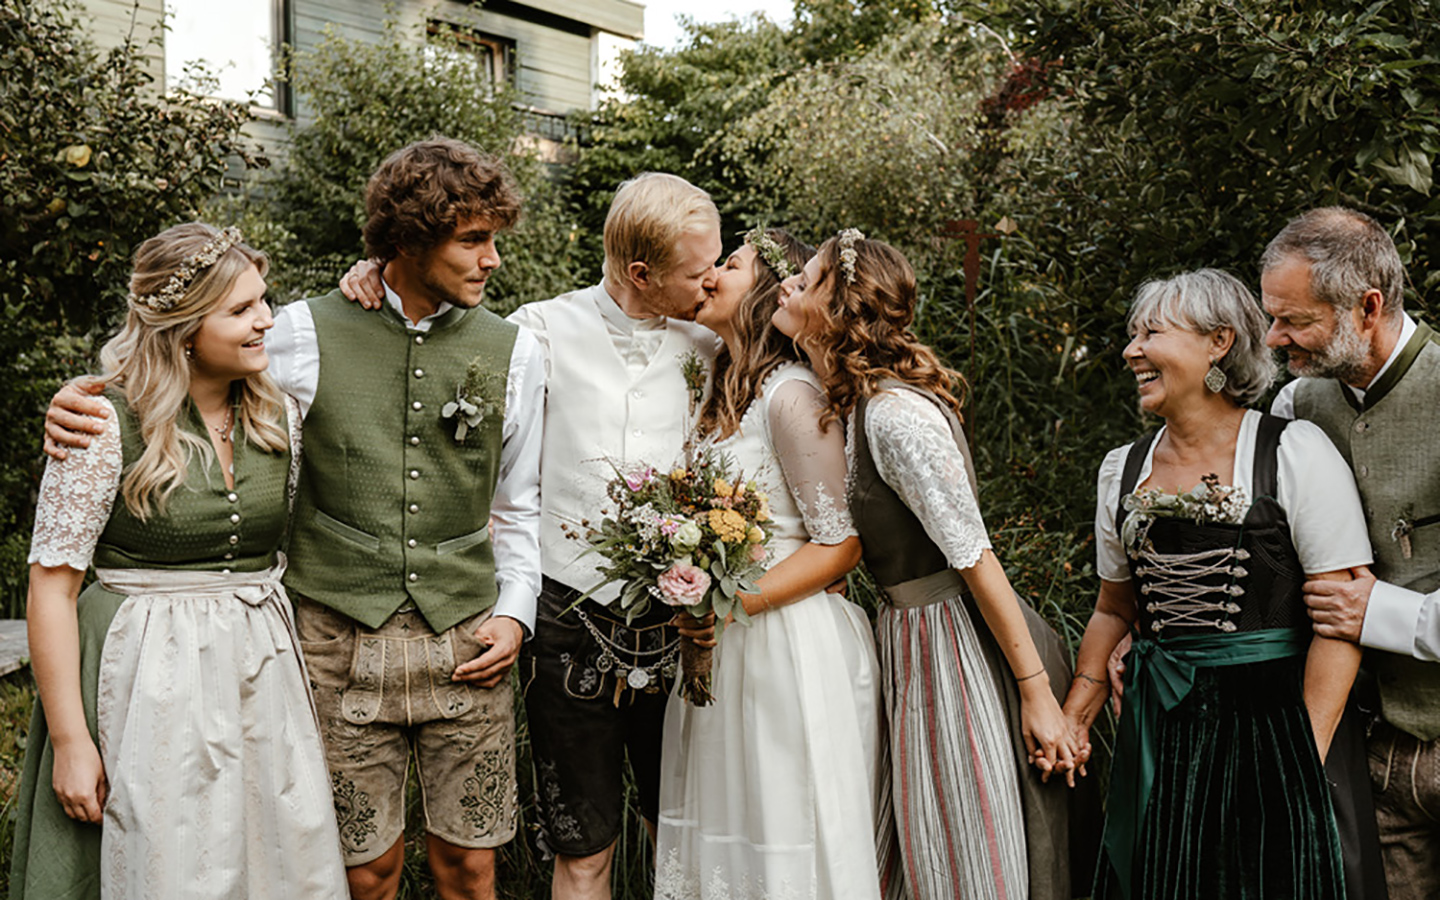 Die Gäste stehen zusammen im Garten, das Hochzeitspaar sich küssend in der Mitte. Alle anderen blicken zu ihnen und strahlen vor Freude über die Hochzeit. 